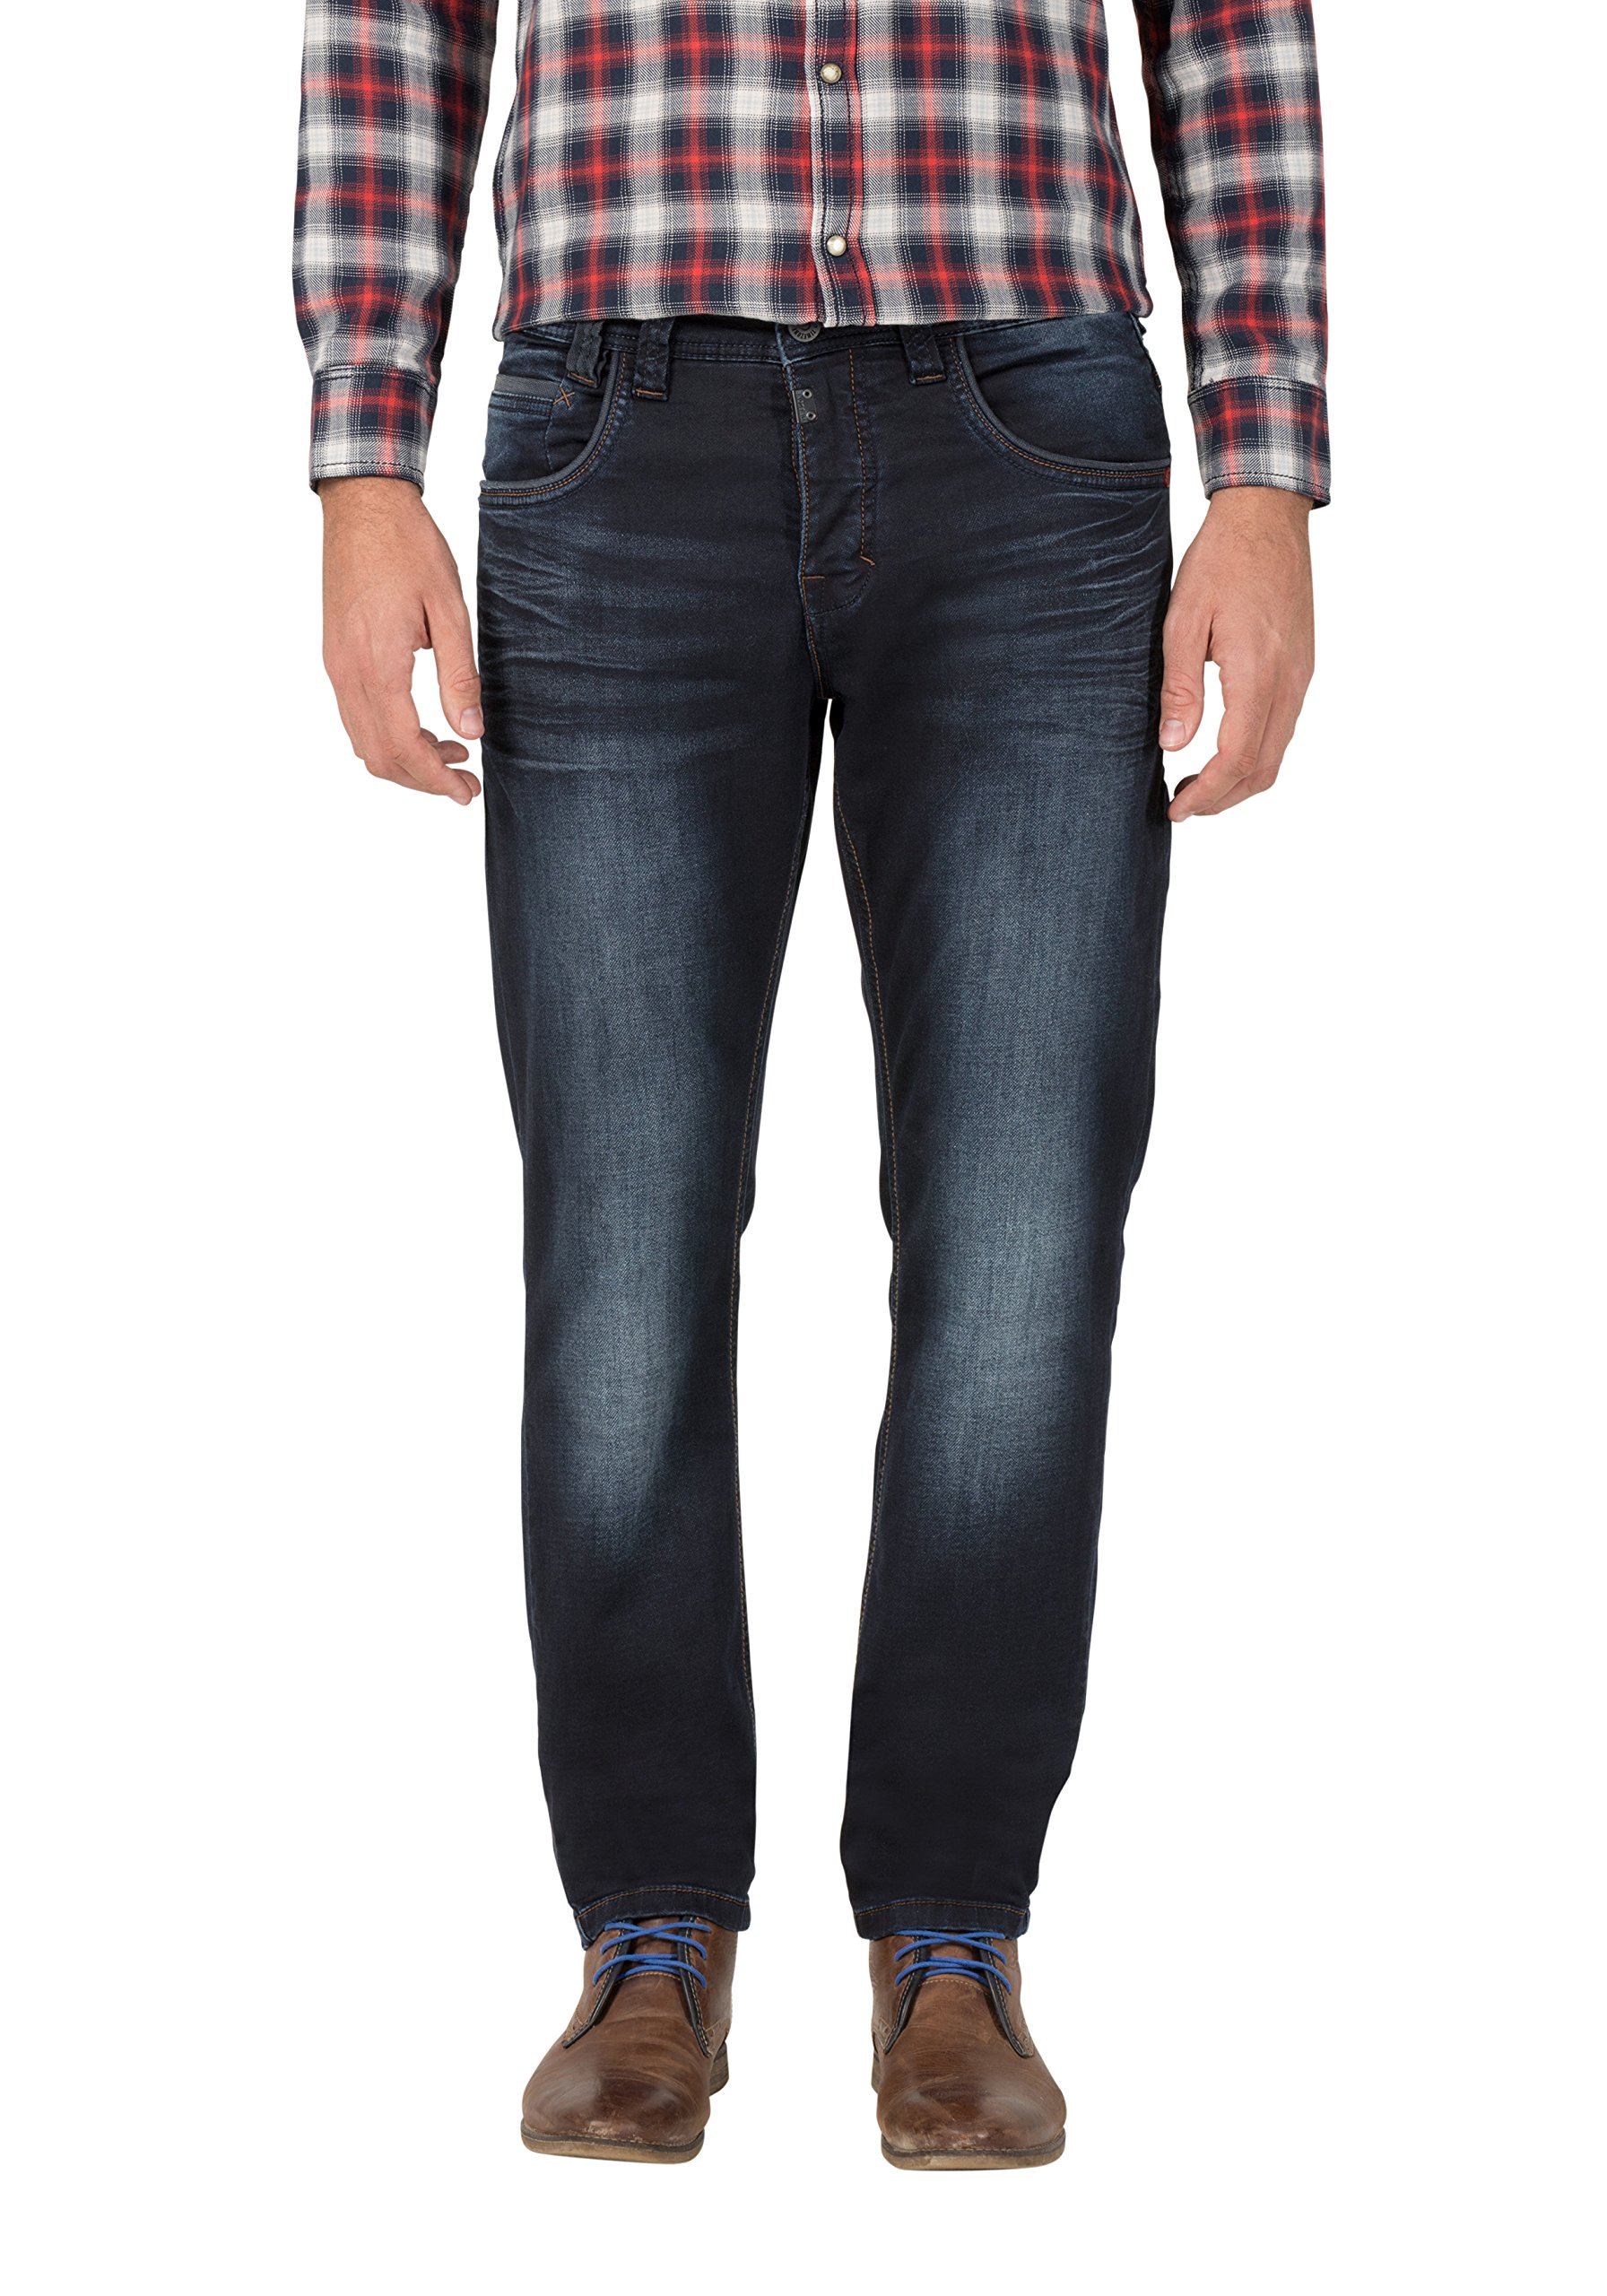 Timezone Herren Regular GerritTZ Straight Jeans, Blau (Indigo Rough Wash 3200), W31/L32